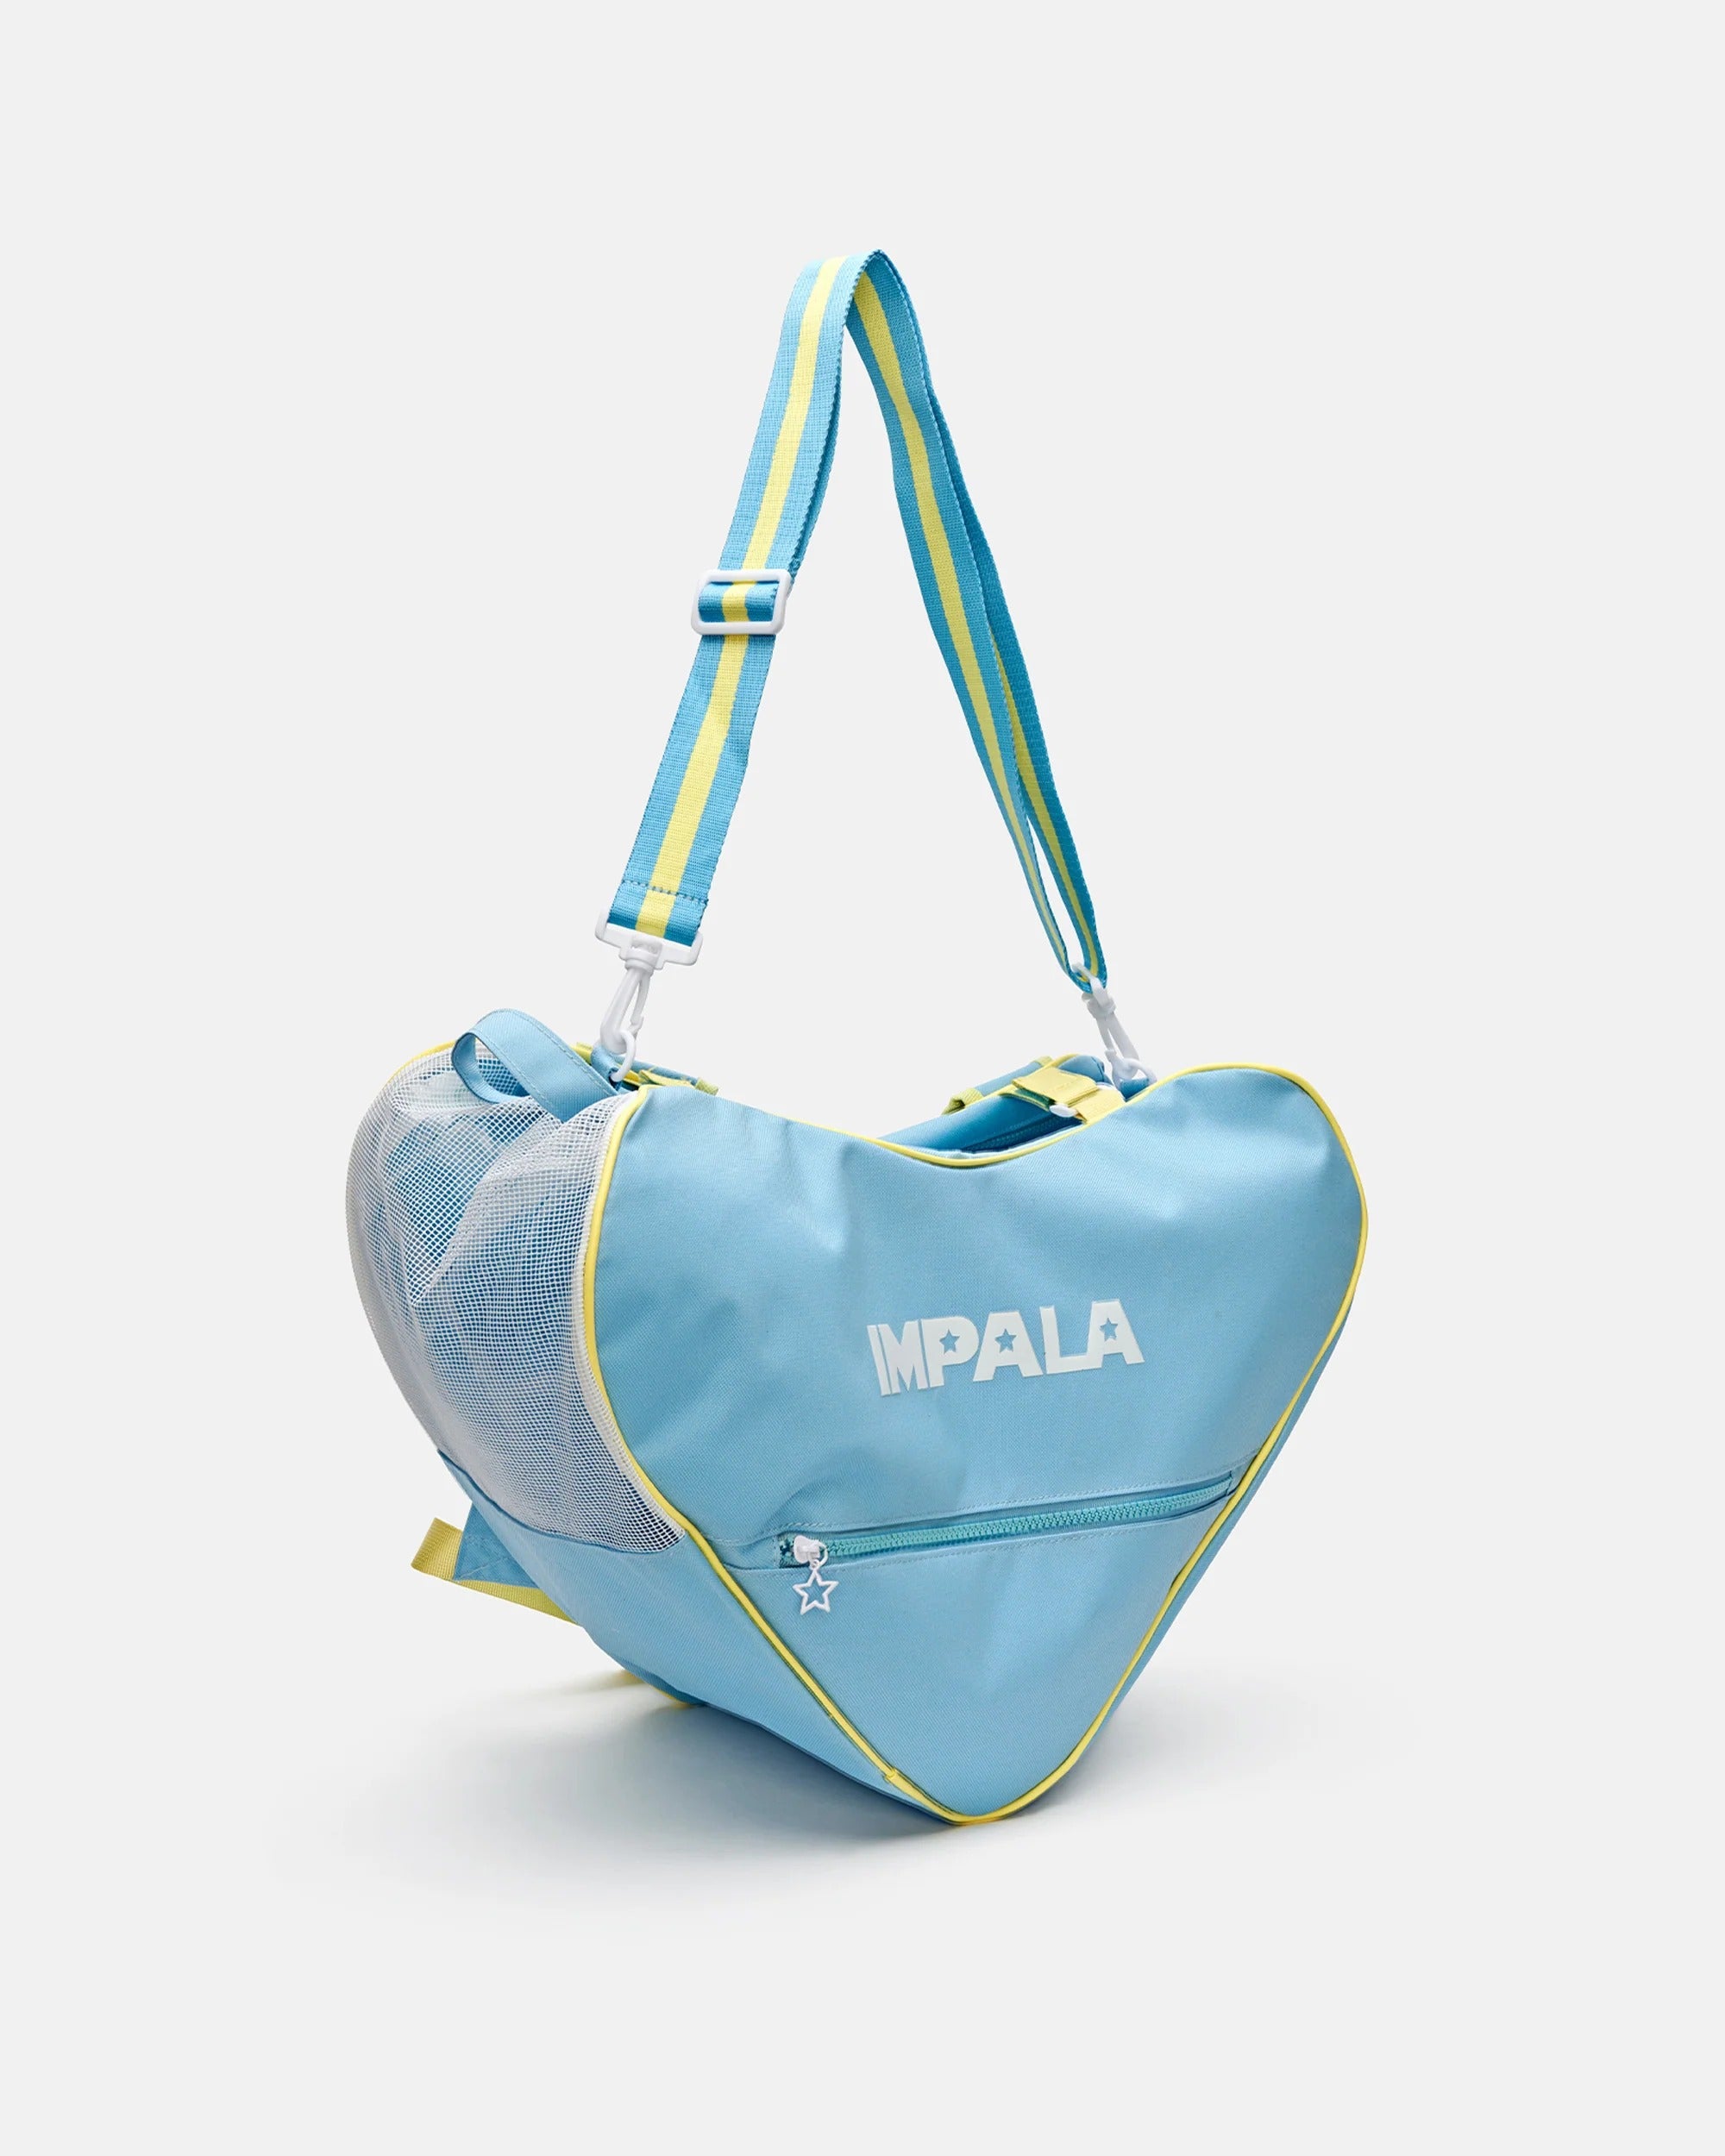 IMPALA - Blue Skate Bag